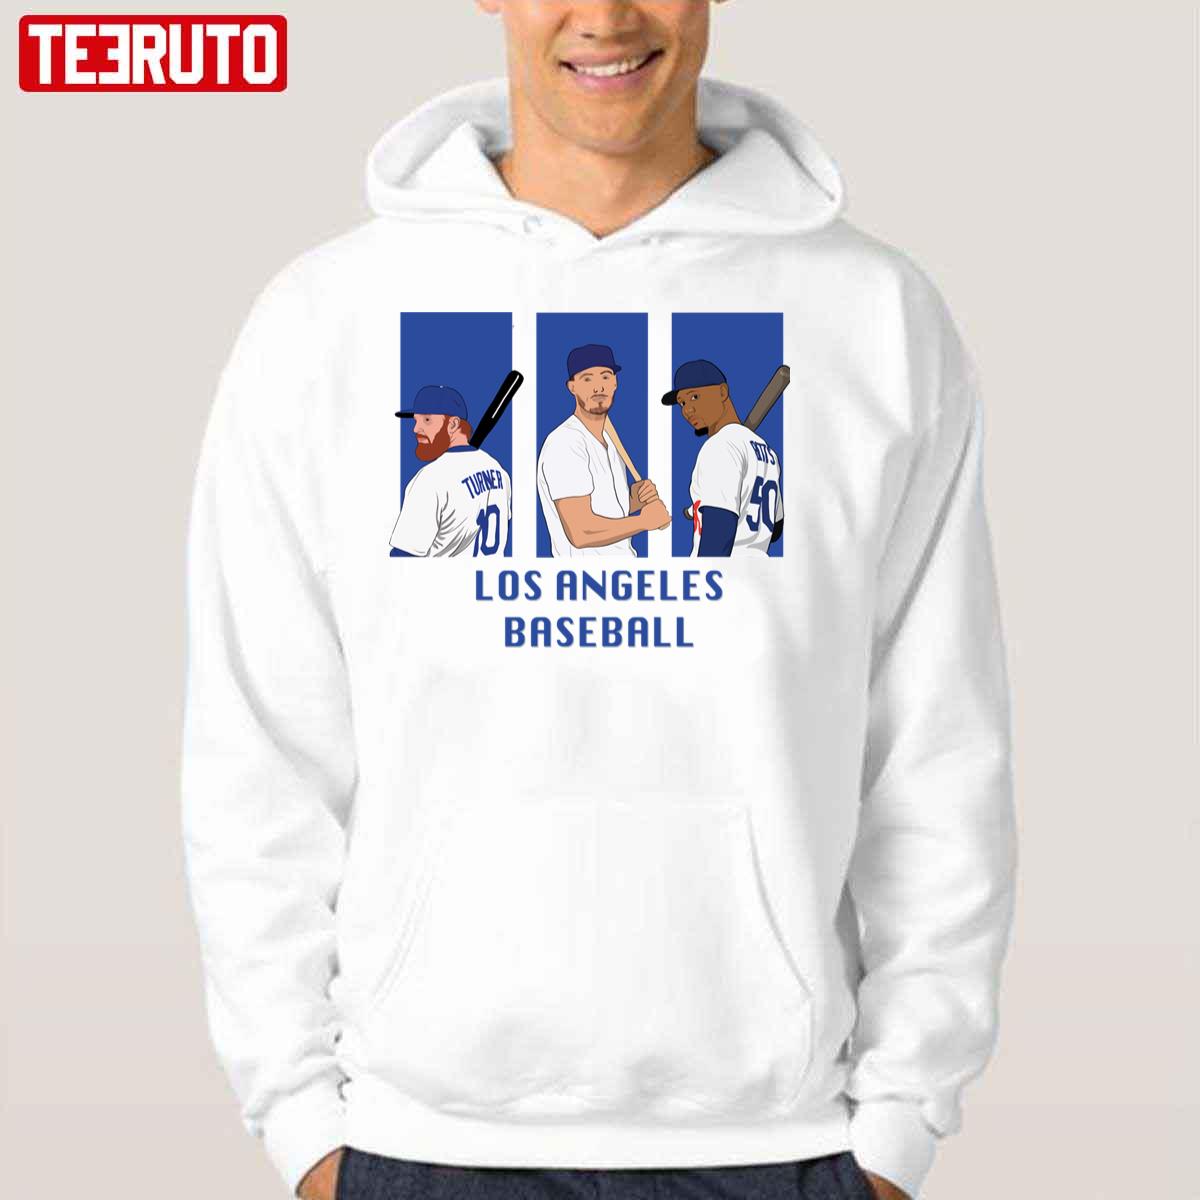 Mookie betts los angeles Dodgers mookie betts shirt, hoodie, sweatshirt for  men and women